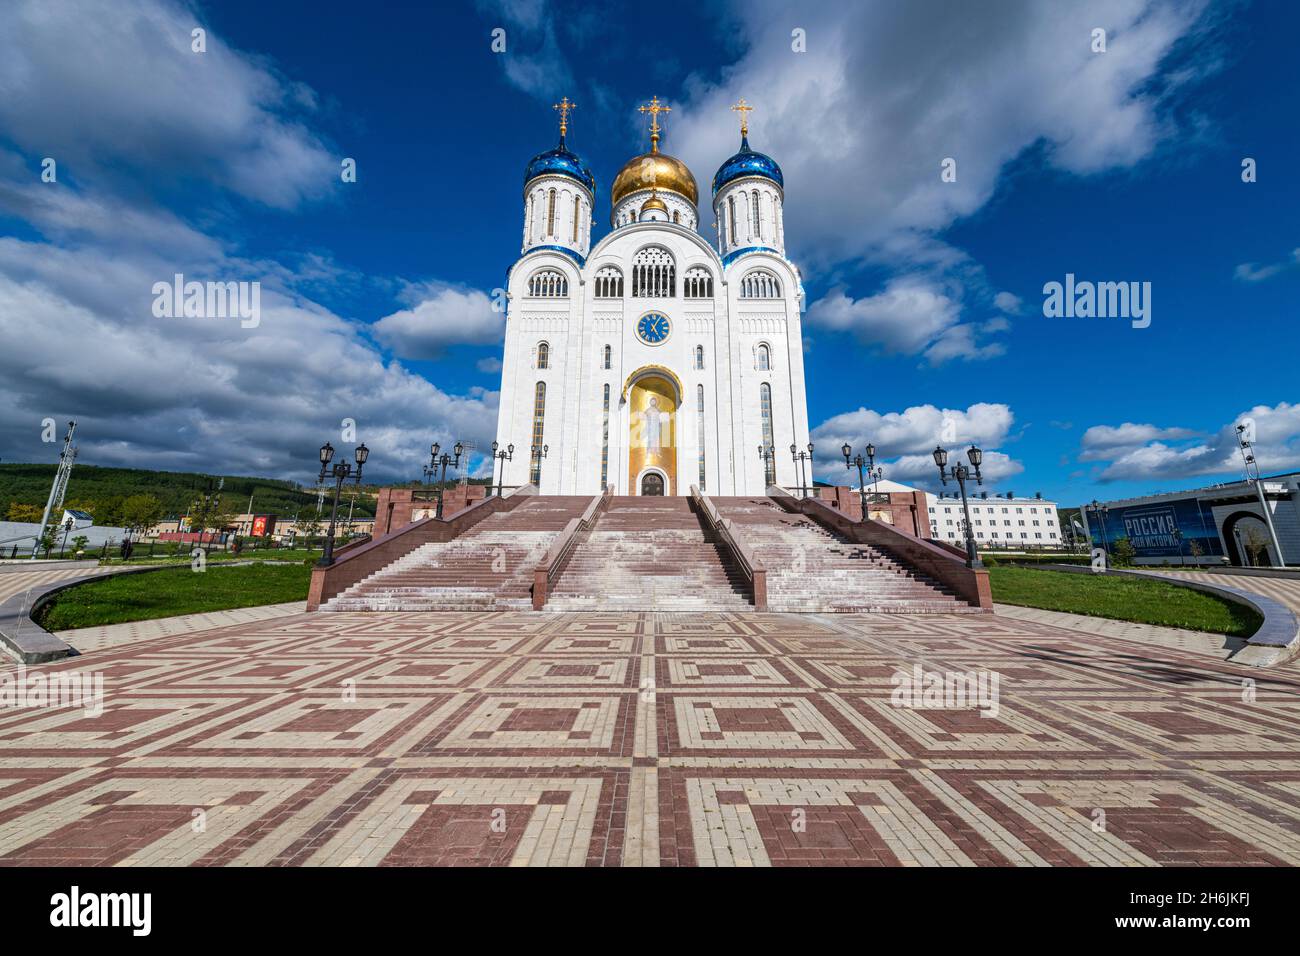 Cathédrale de la Nativité, Ploshchad' Pobedy, Yuzhno-Sakhalinsk, Sakhaline, Russie,Eurasie Banque D'Images